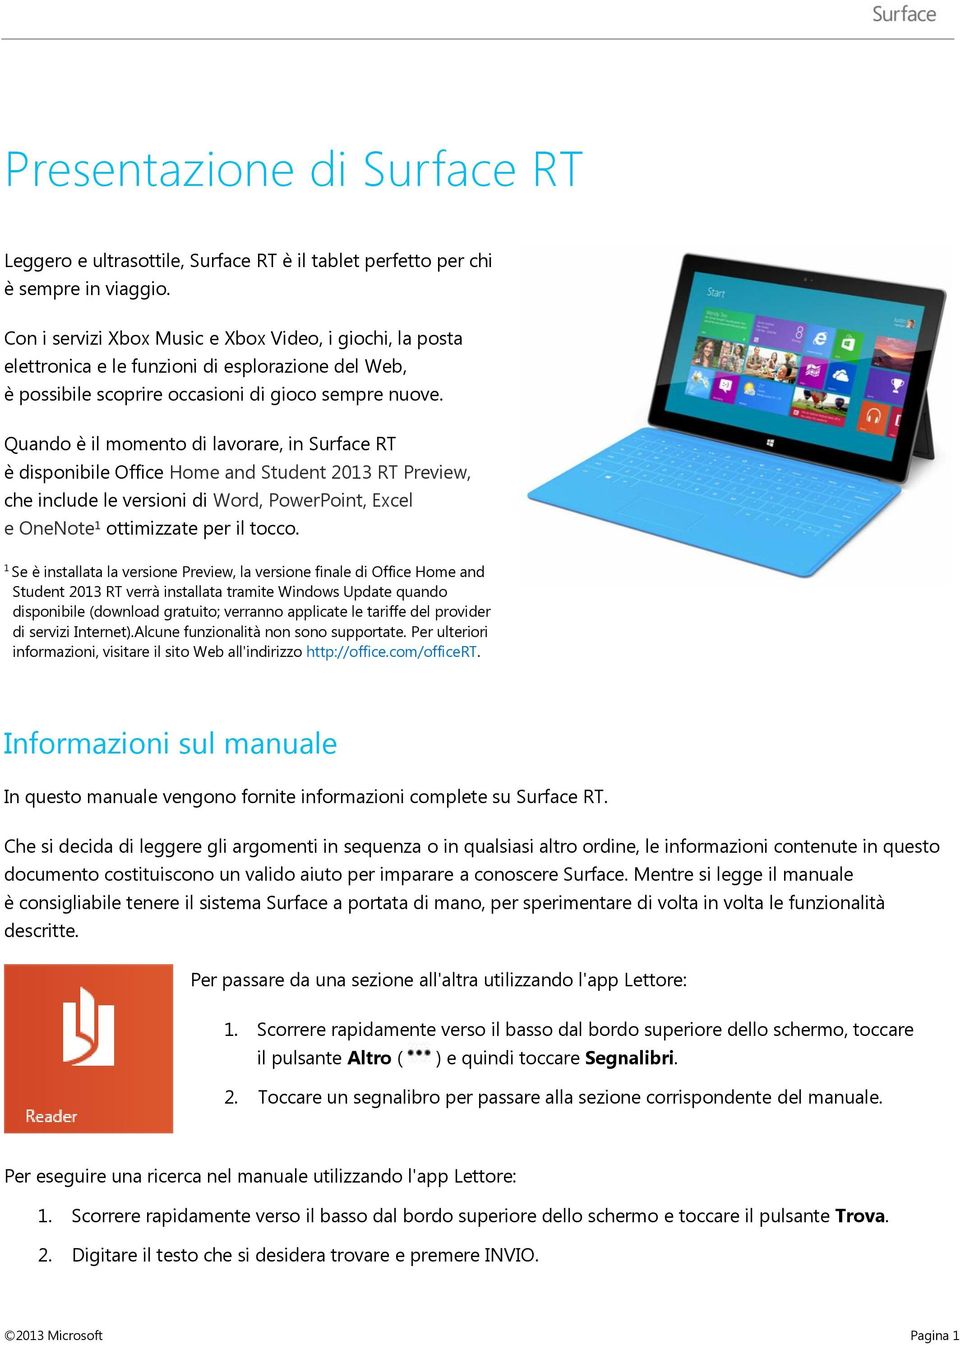 Quando è il momento di lavorare, in Surface RT è disponibile Office Home and Student 2013 RT Preview, che include le versioni di Word, PowerPoint, Excel e OneNote 1 ottimizzate per il tocco.